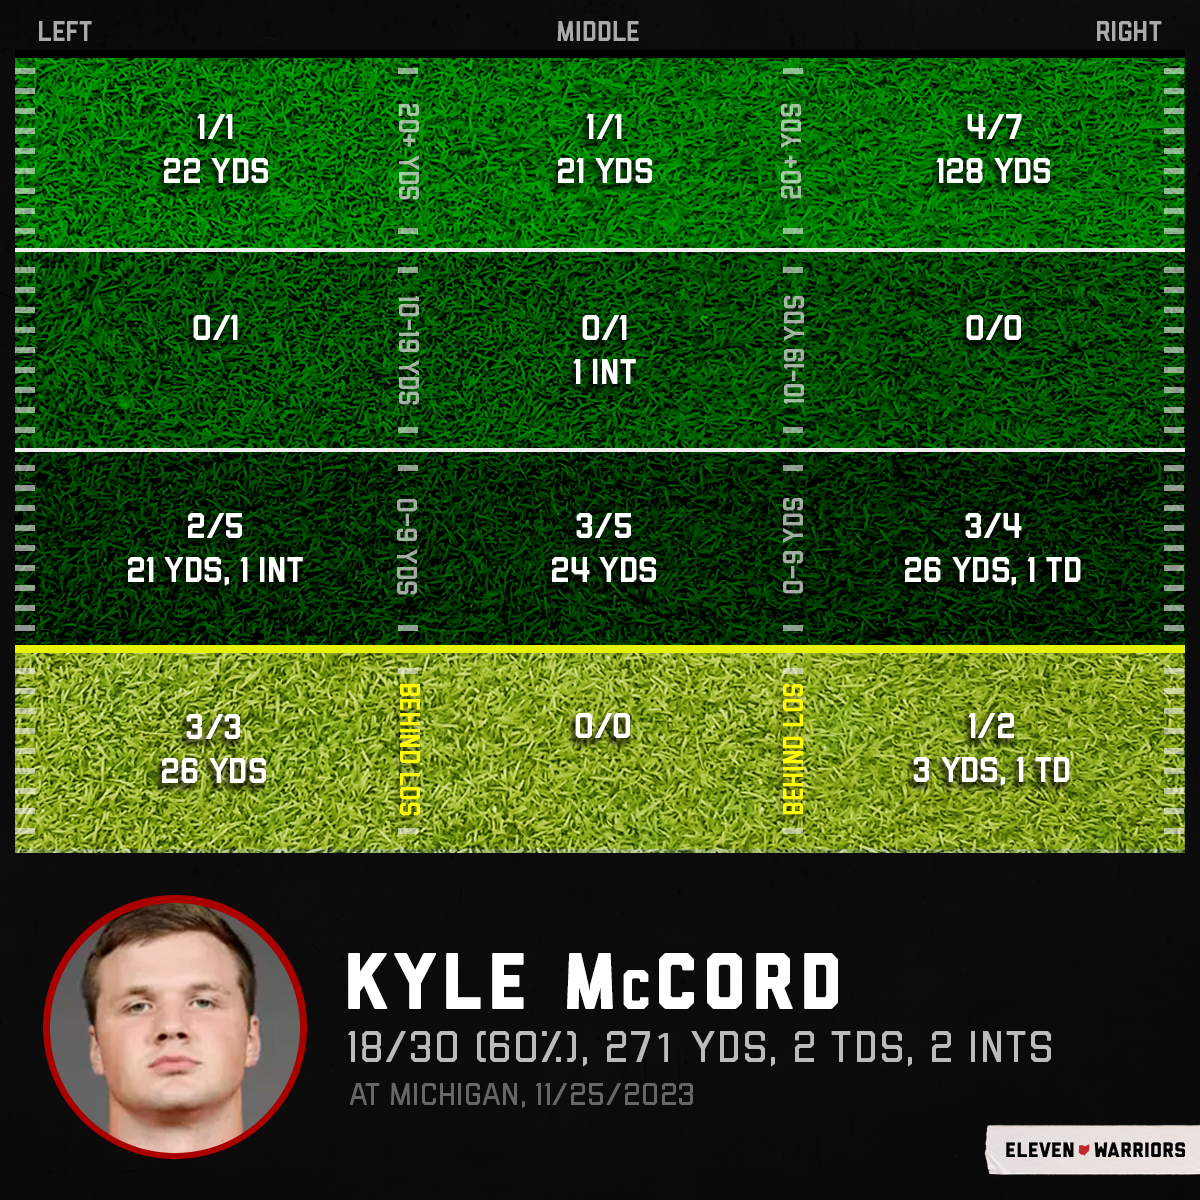 Kyle McCord's passing chart at Michigan